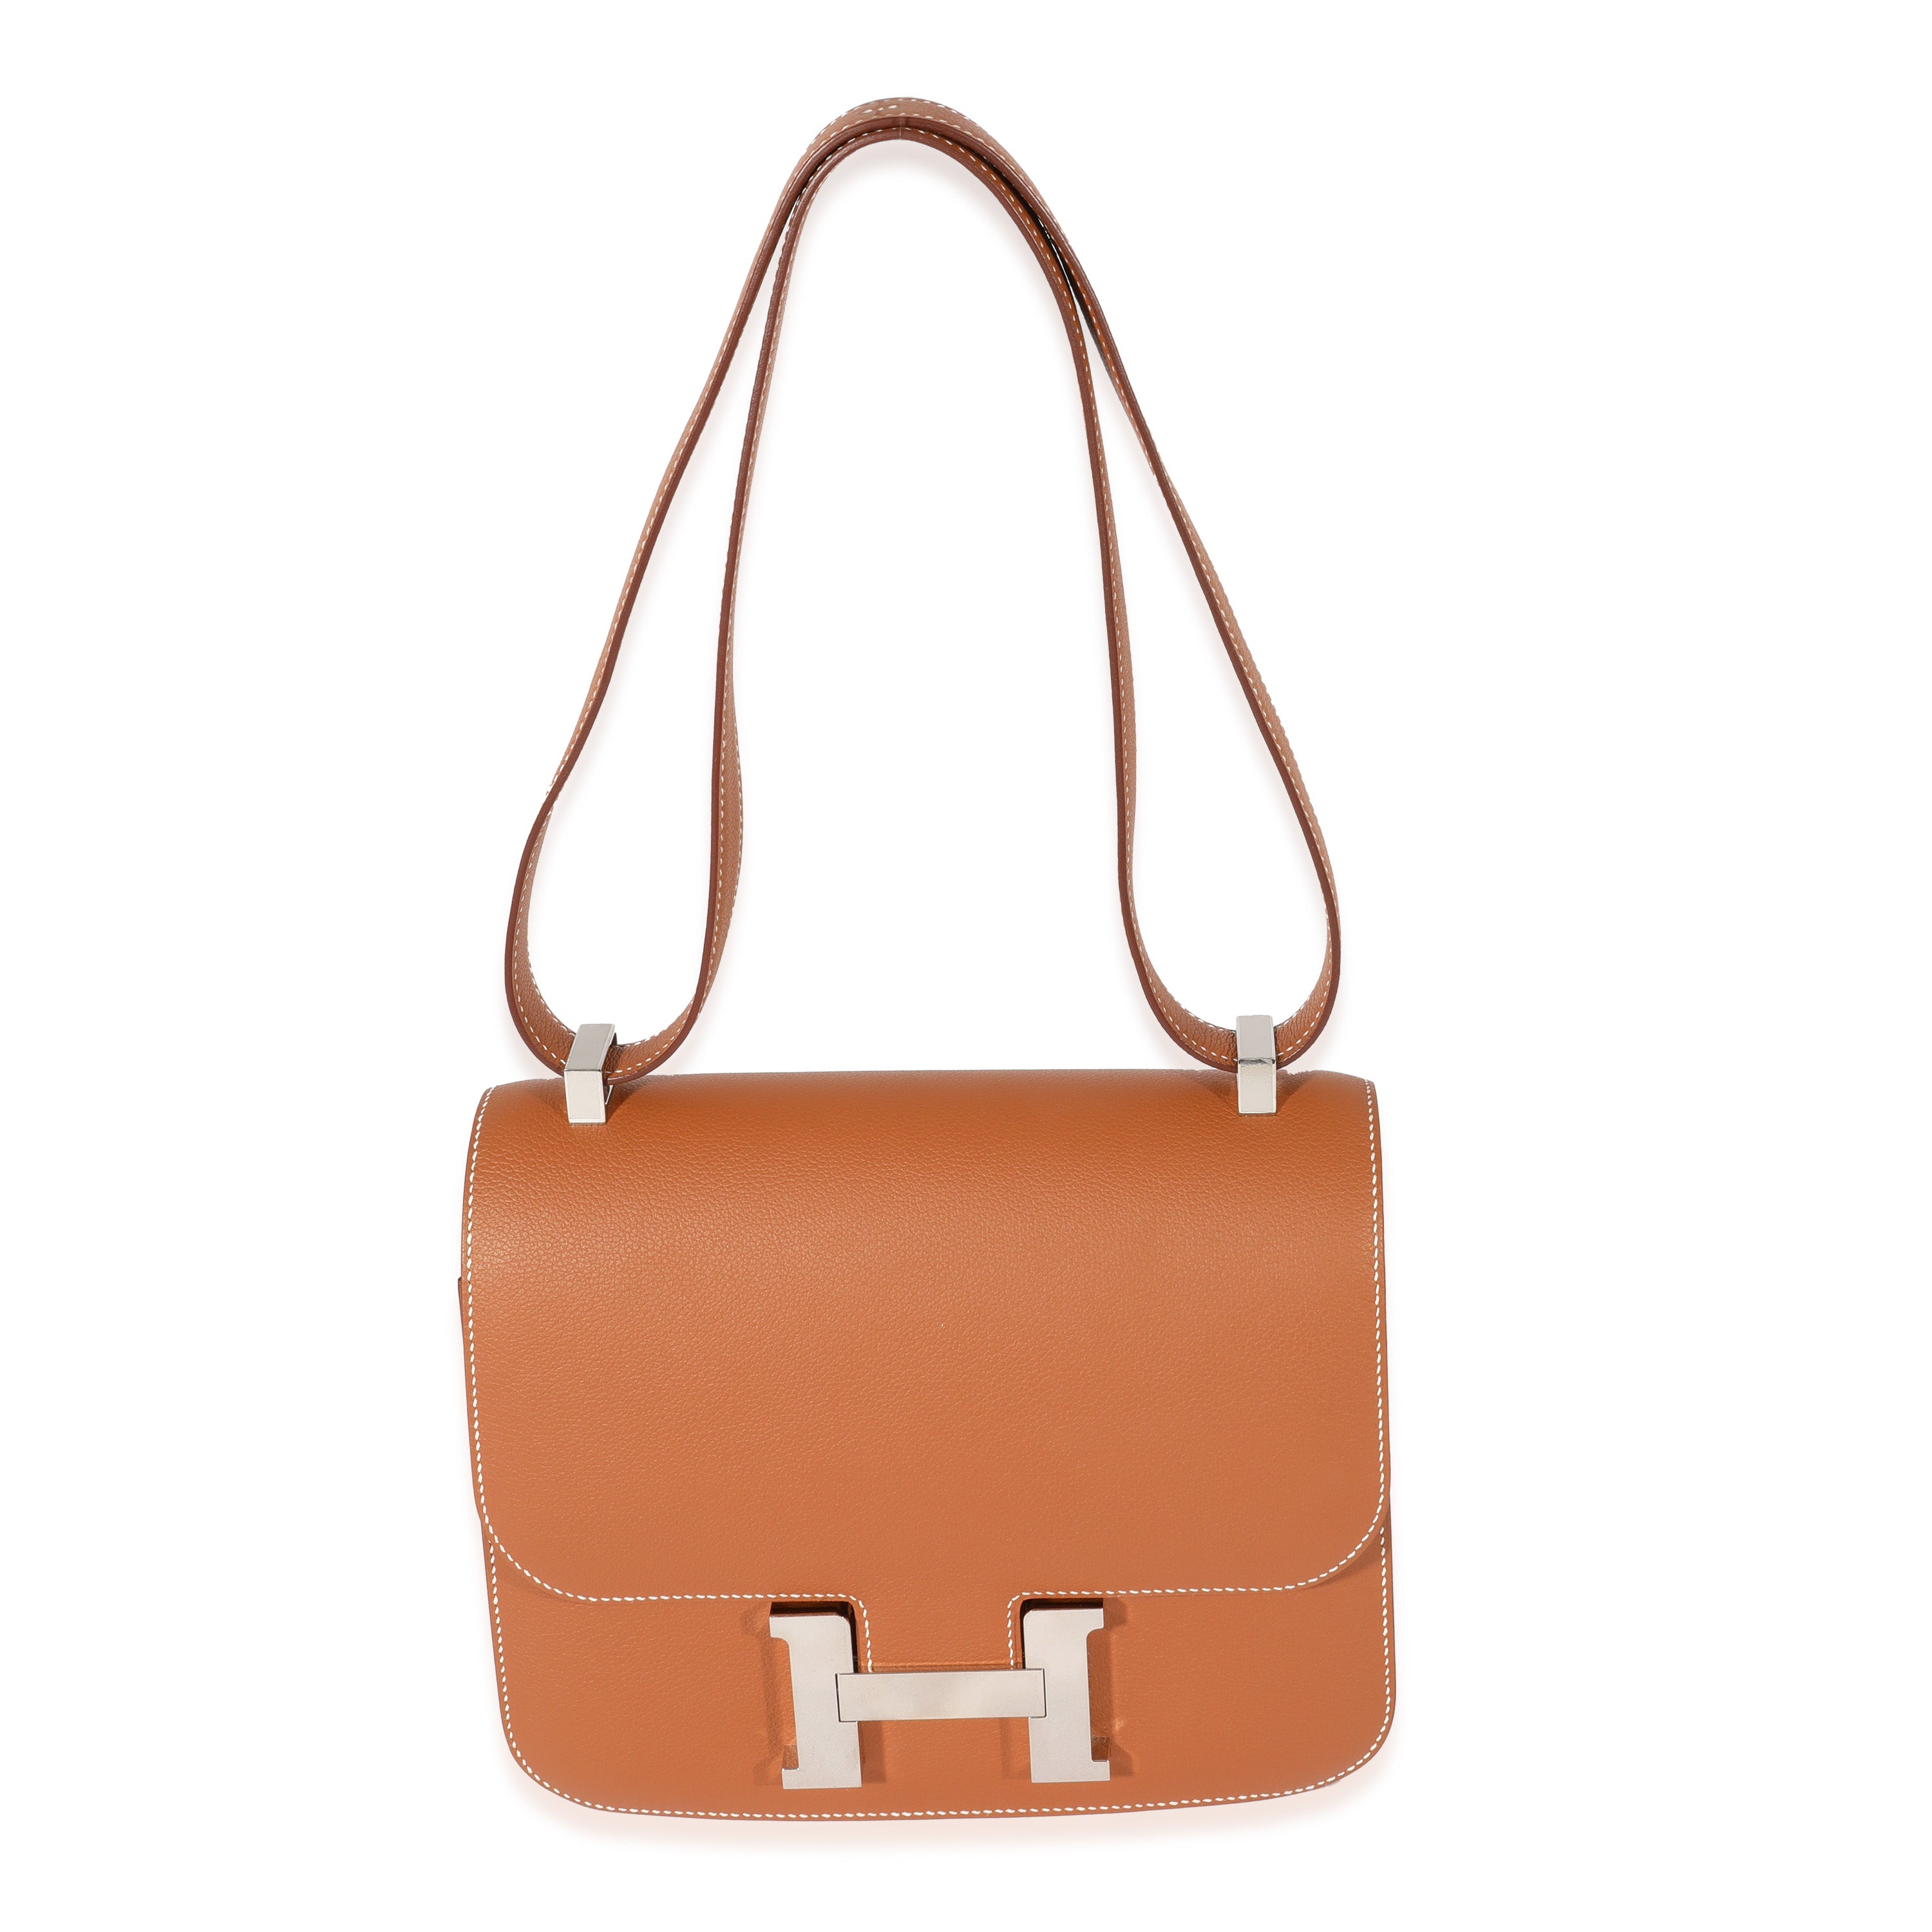 Hermes 24/24 Mini bag gold evercolor PHW